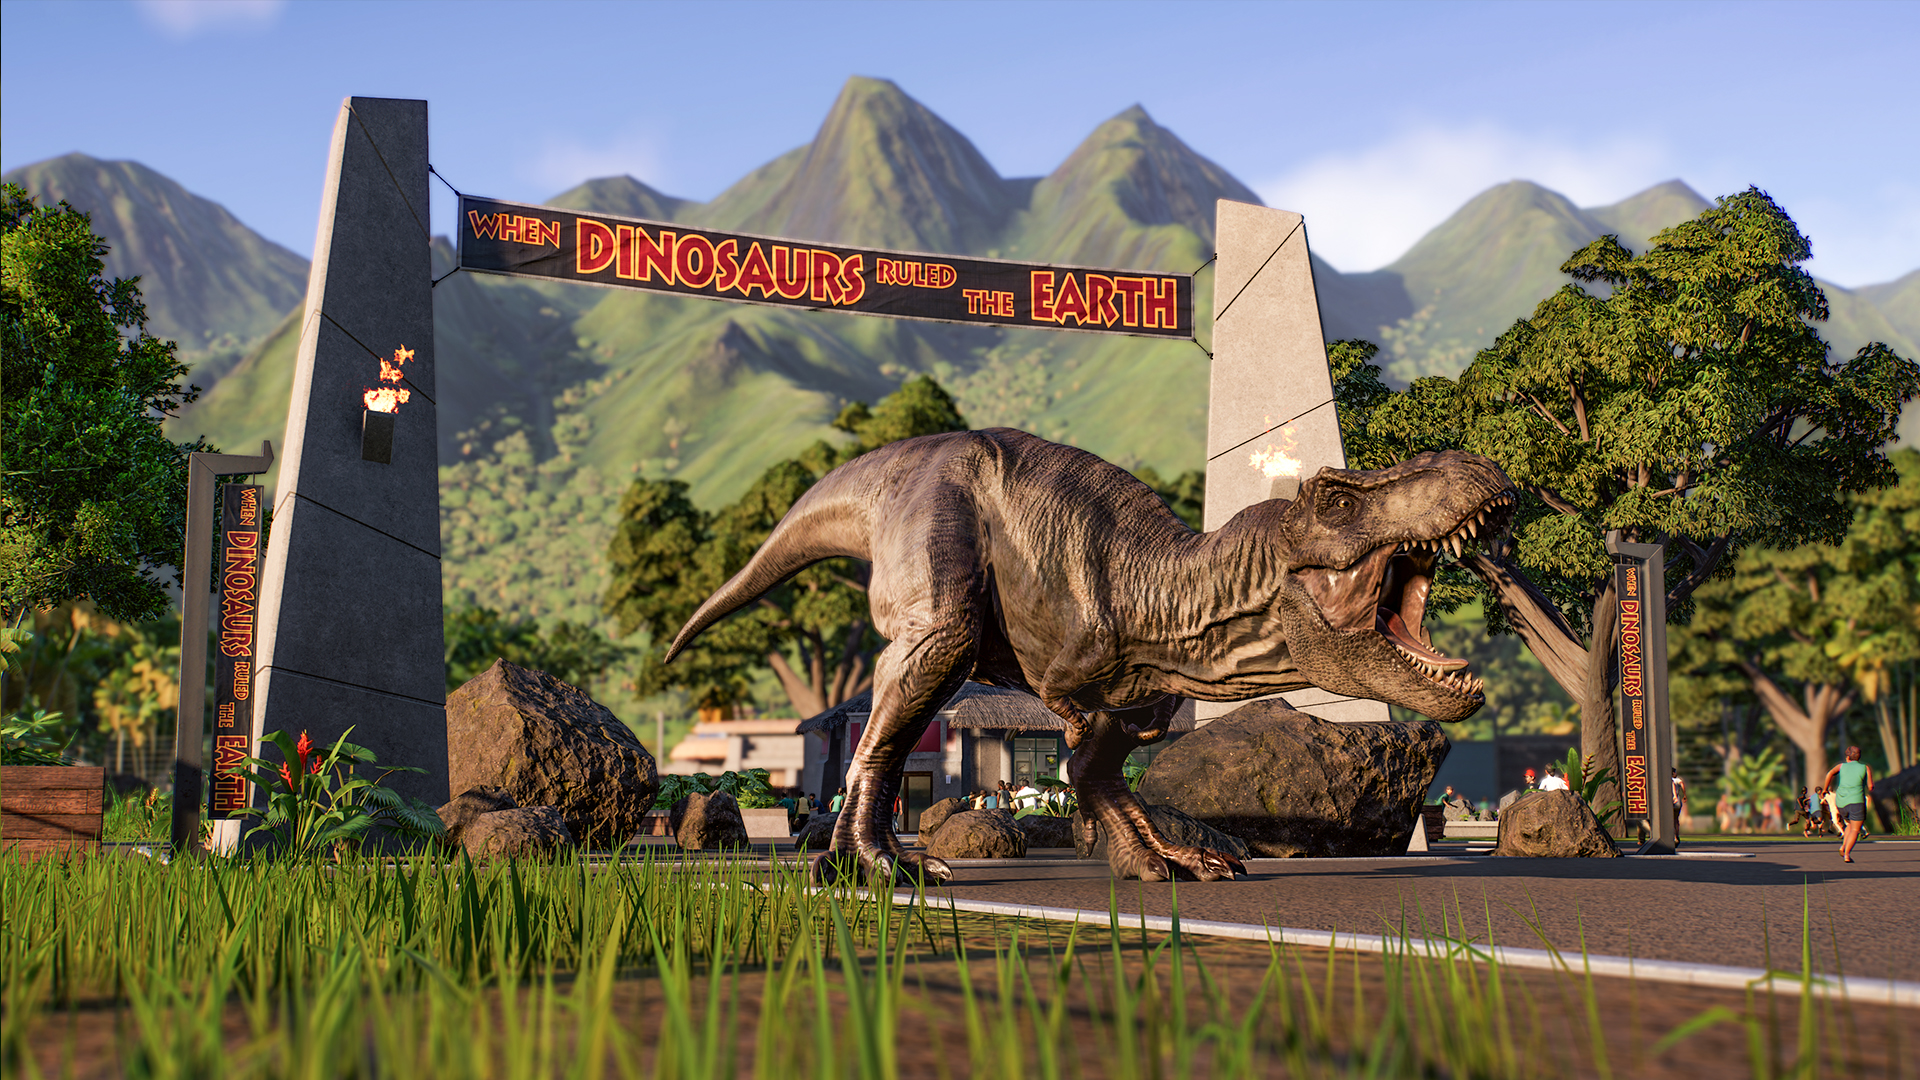 Jurassic Park yönetim oyunu, filmin 30. yıl dönümünü nostaljik set giydirme ve gerçek kaka ekleyerek kutlar.